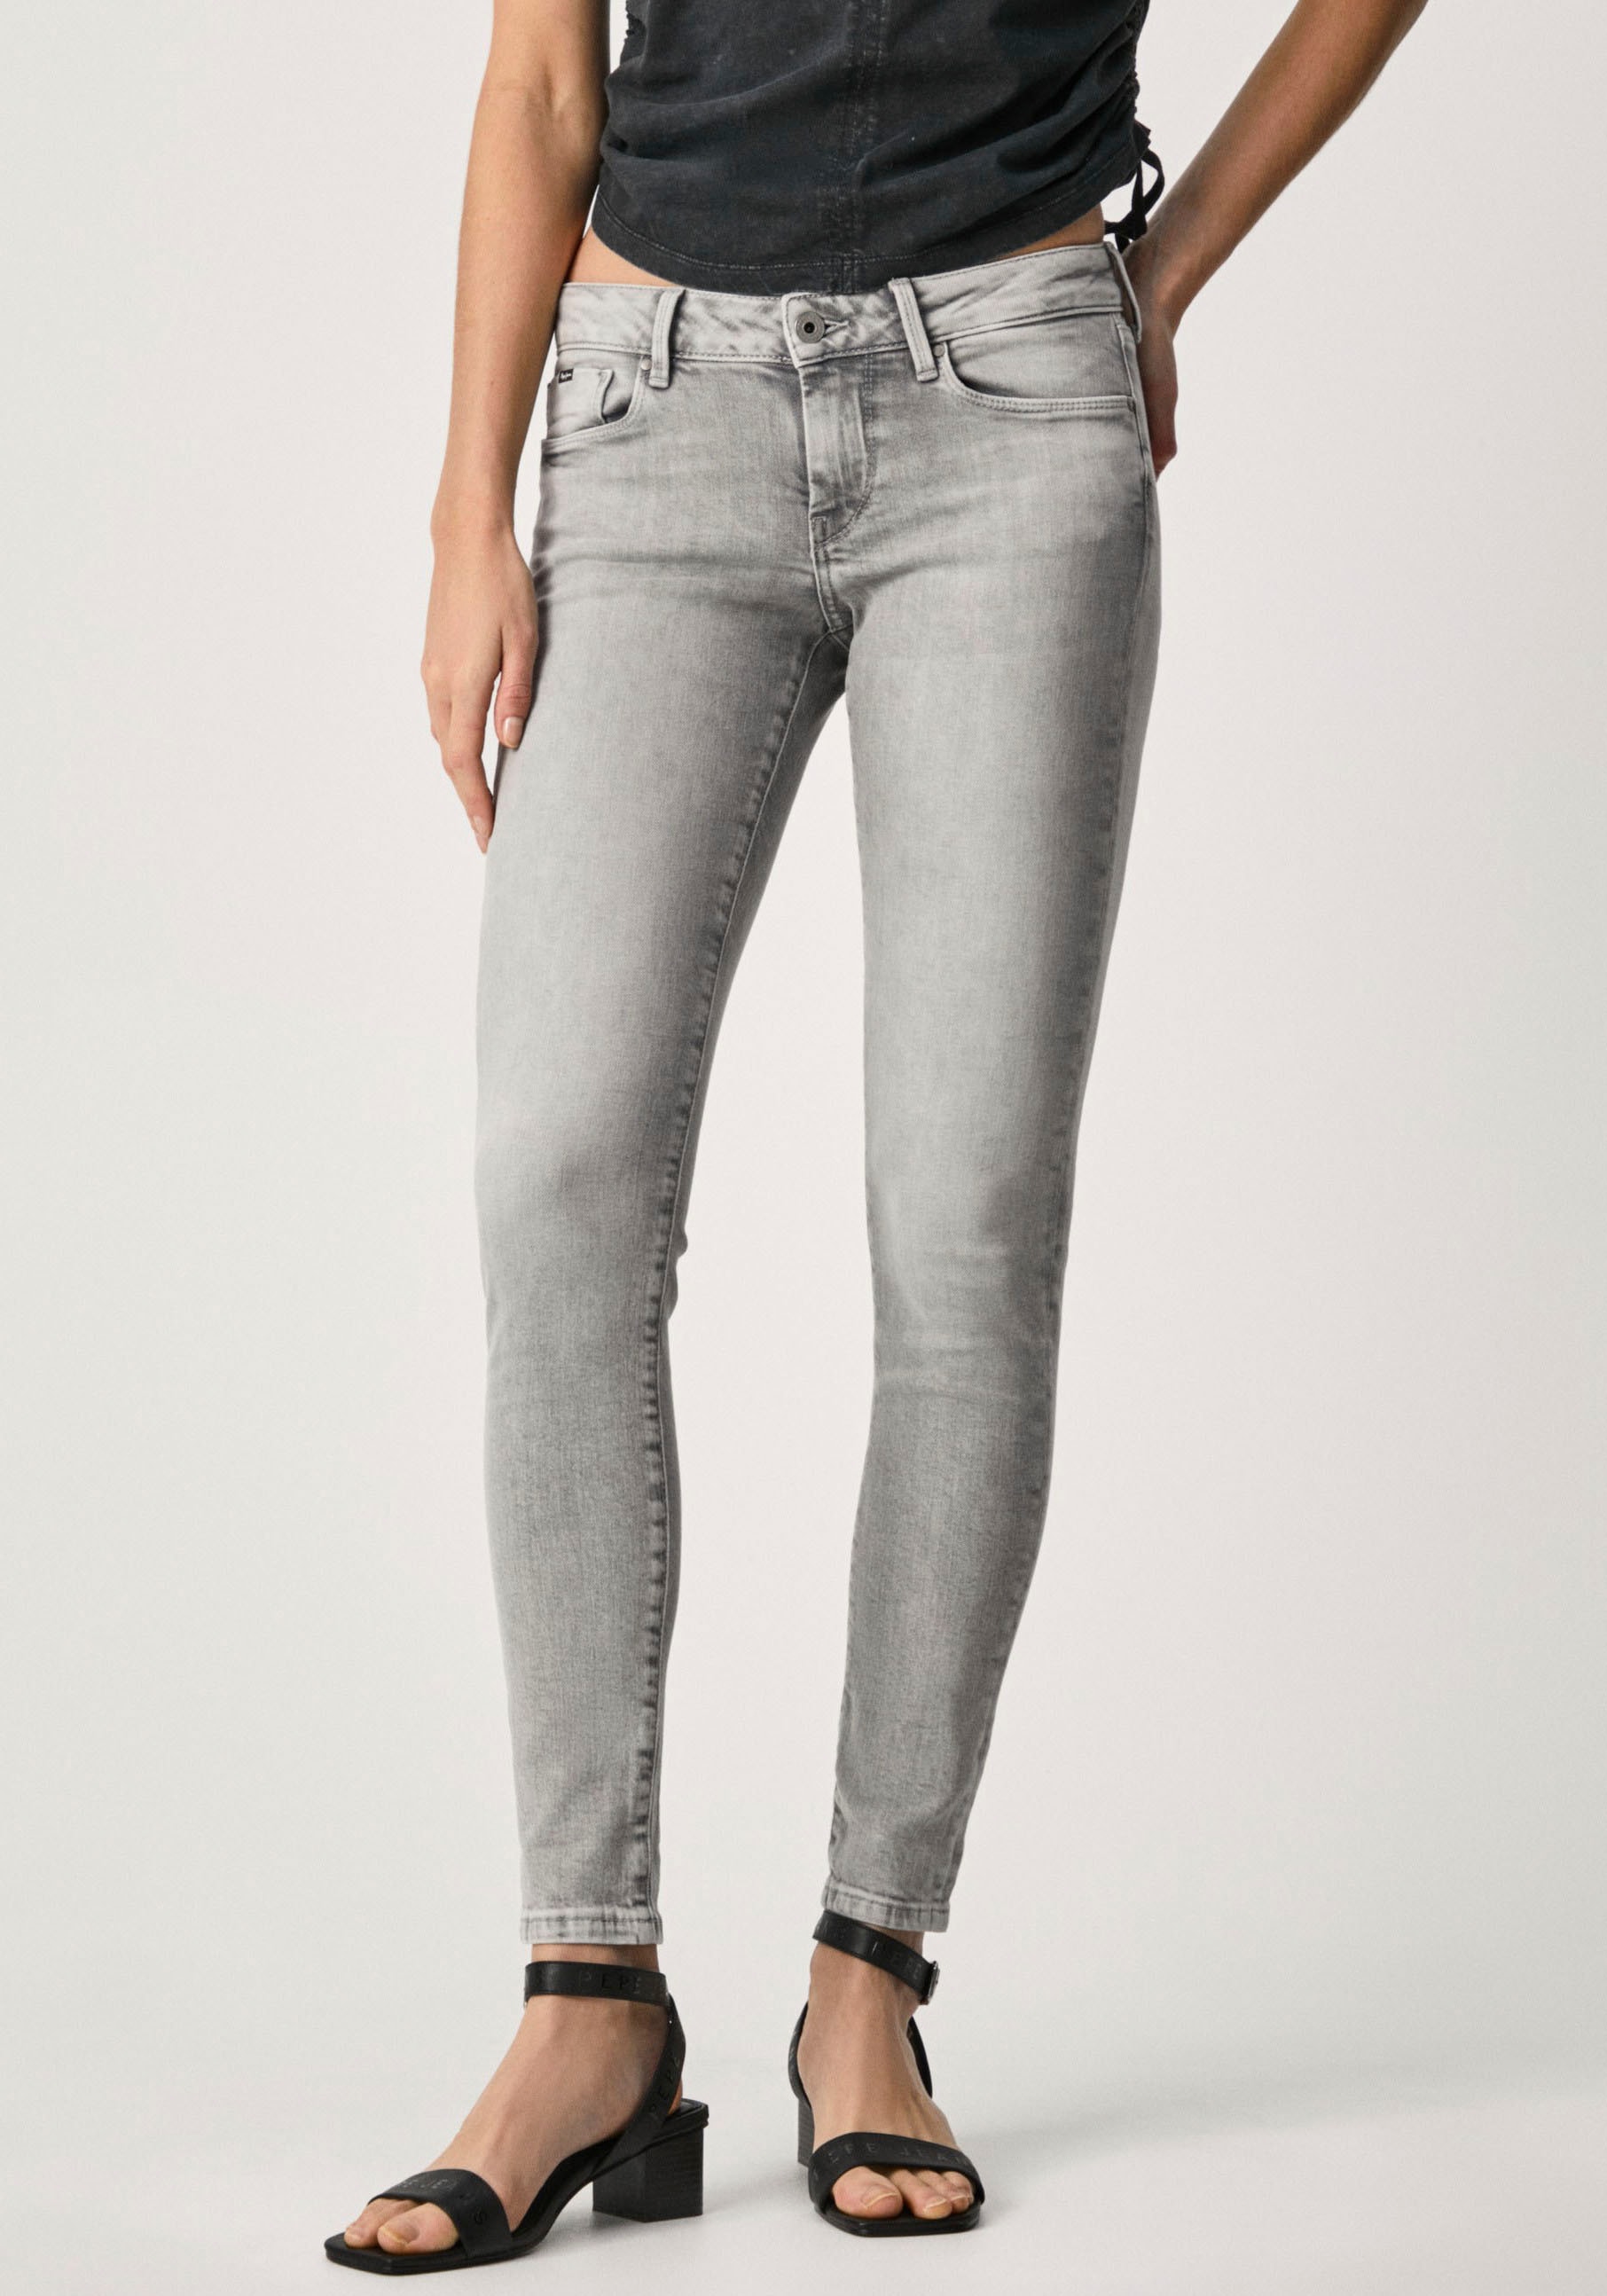 »SOHO«, kaufen bequem Jeans Skinny-fit-Jeans im und mit Pepe 5-Pocket-Stil Bund 1-Knopf Stretch-Anteil